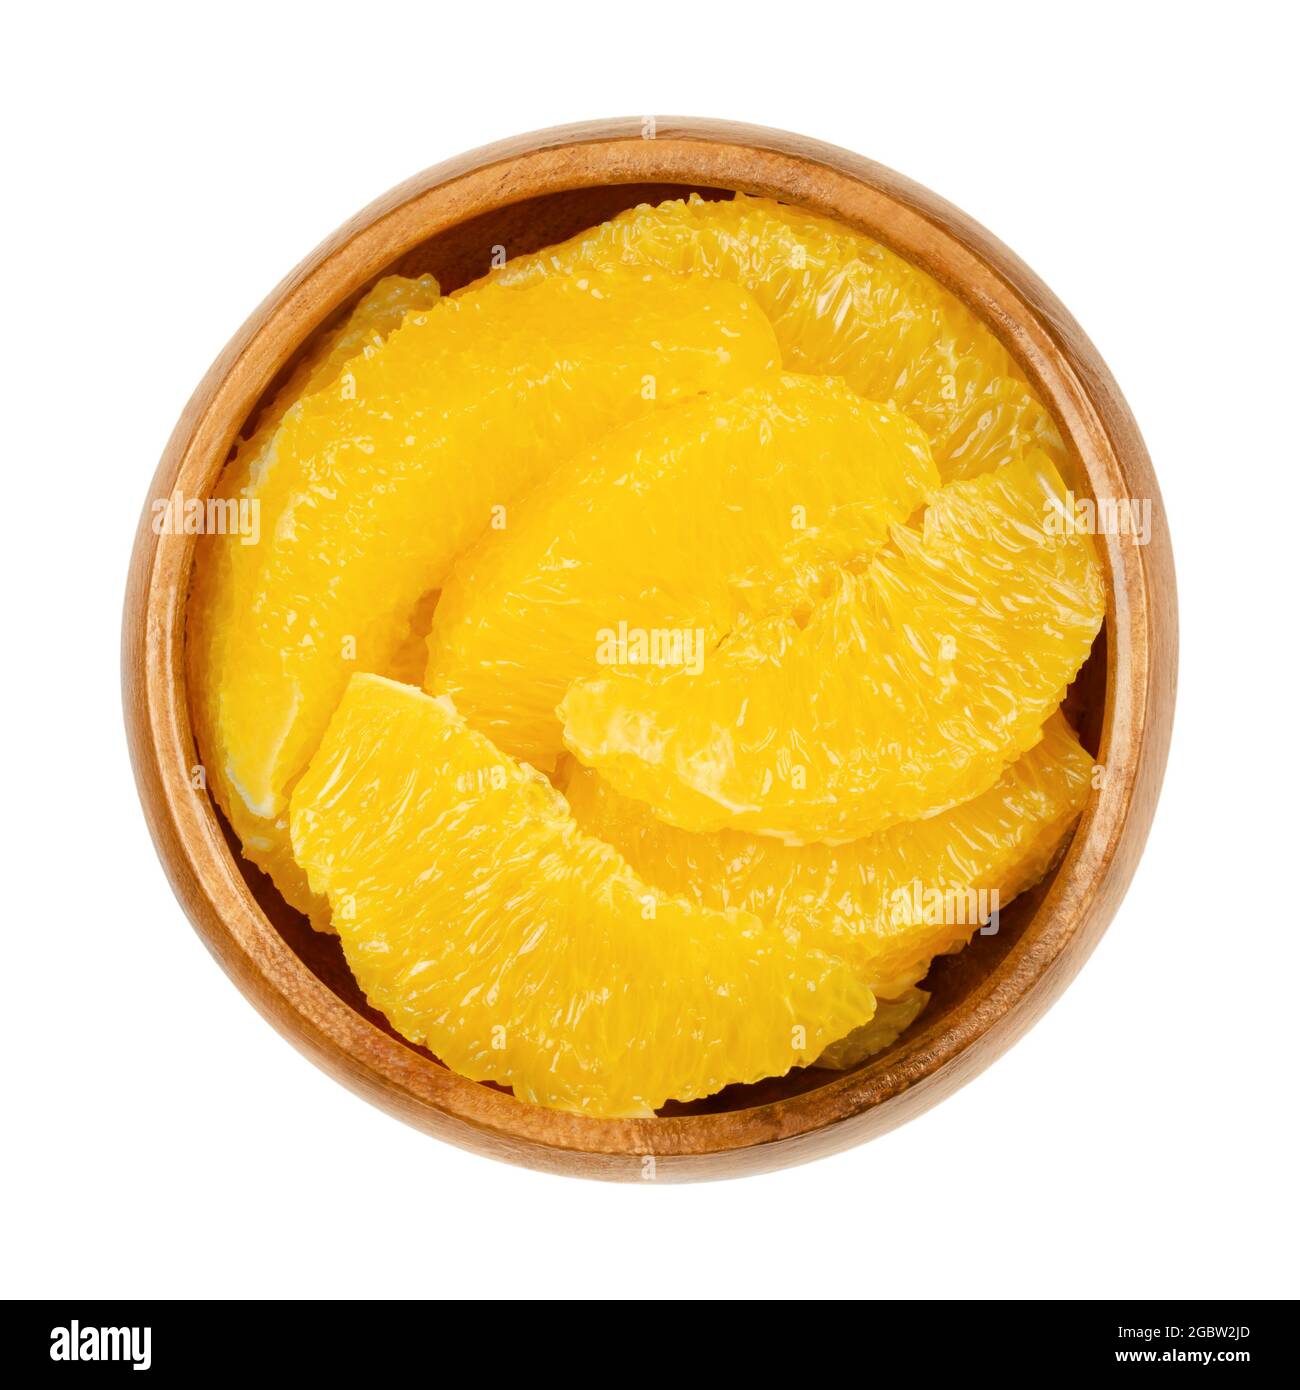 Fette d'arancia supreme, in una ciotola di legno. Segmenti arancioni freschi e maturi, tagliati senza membrane, frutta dolce con polpa di frutta gialla e succosa. Foto Stock